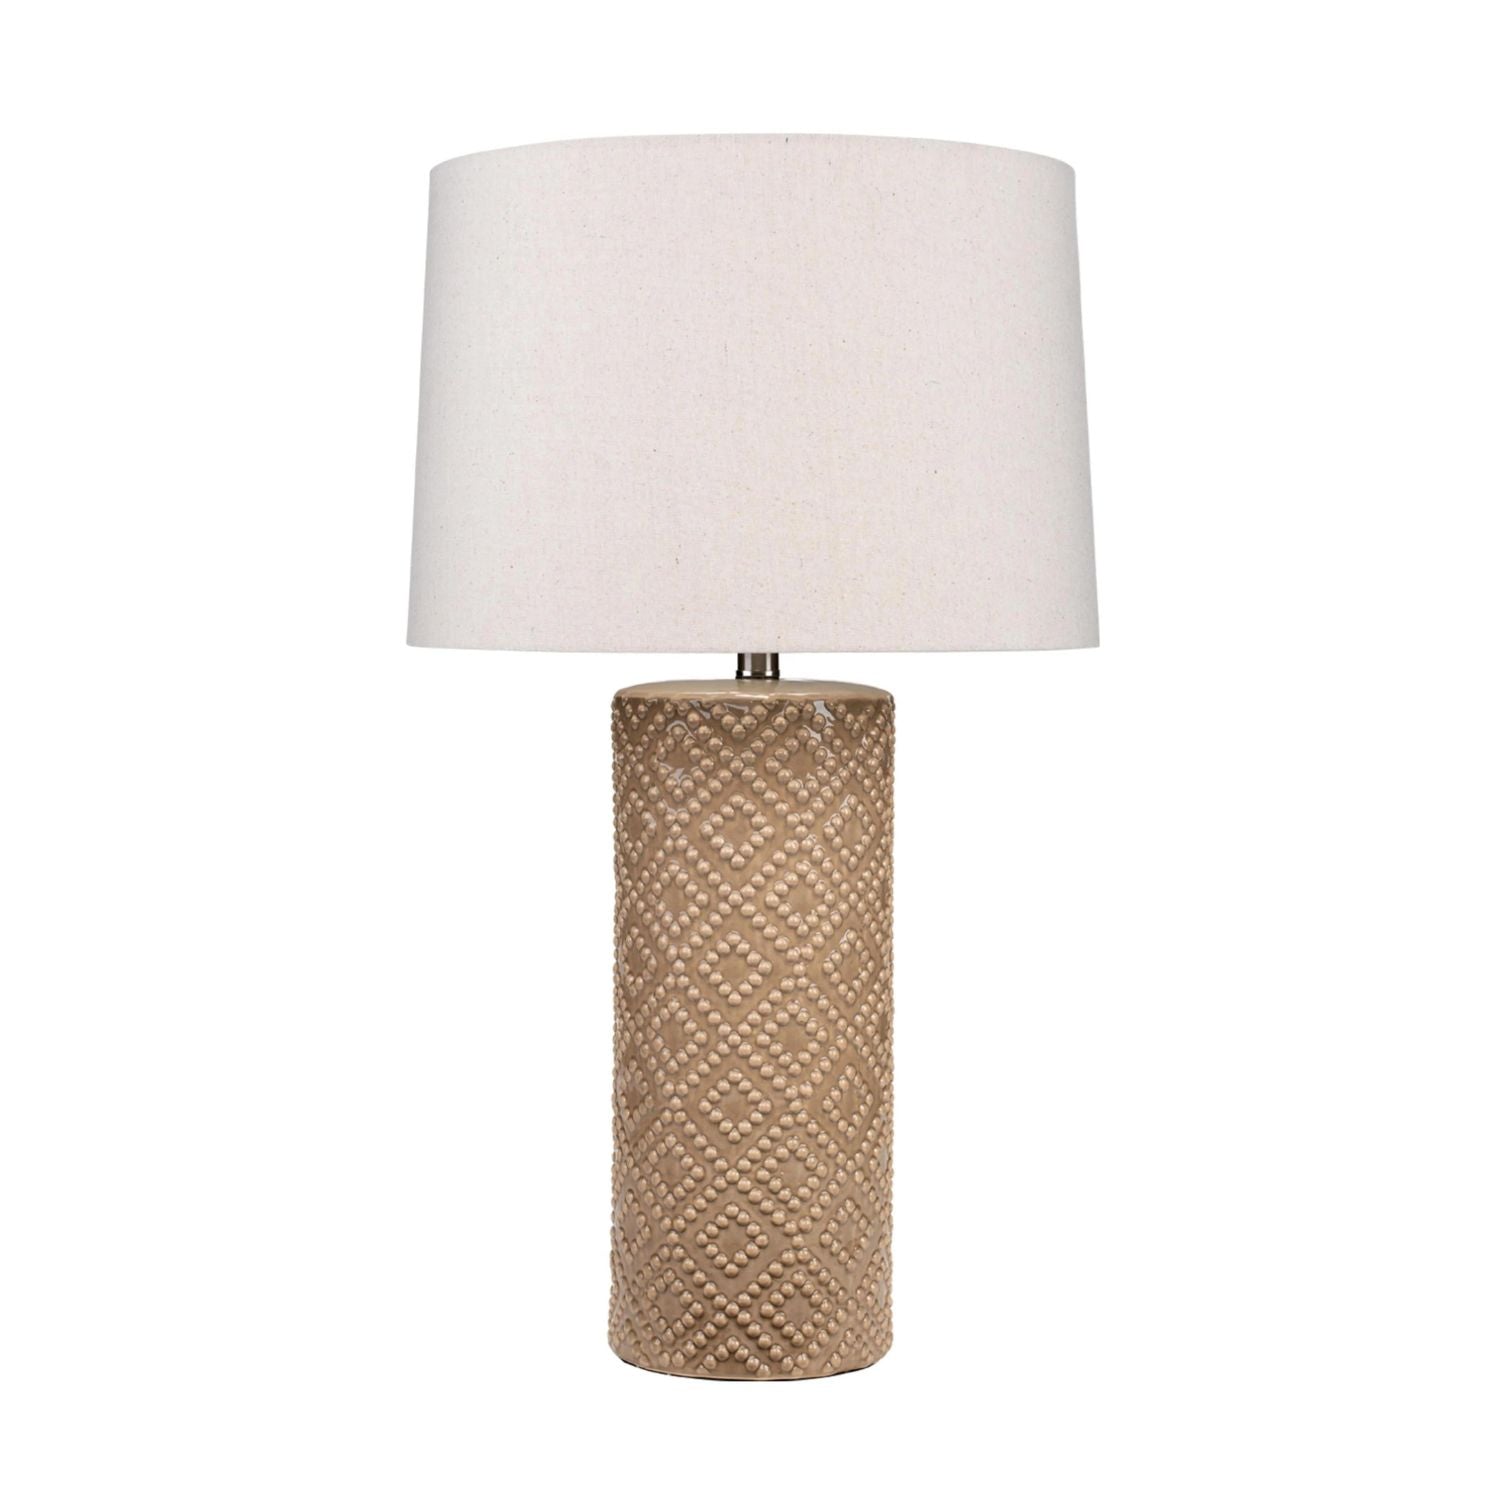 Albi Ceramic Table Lamp, Brown